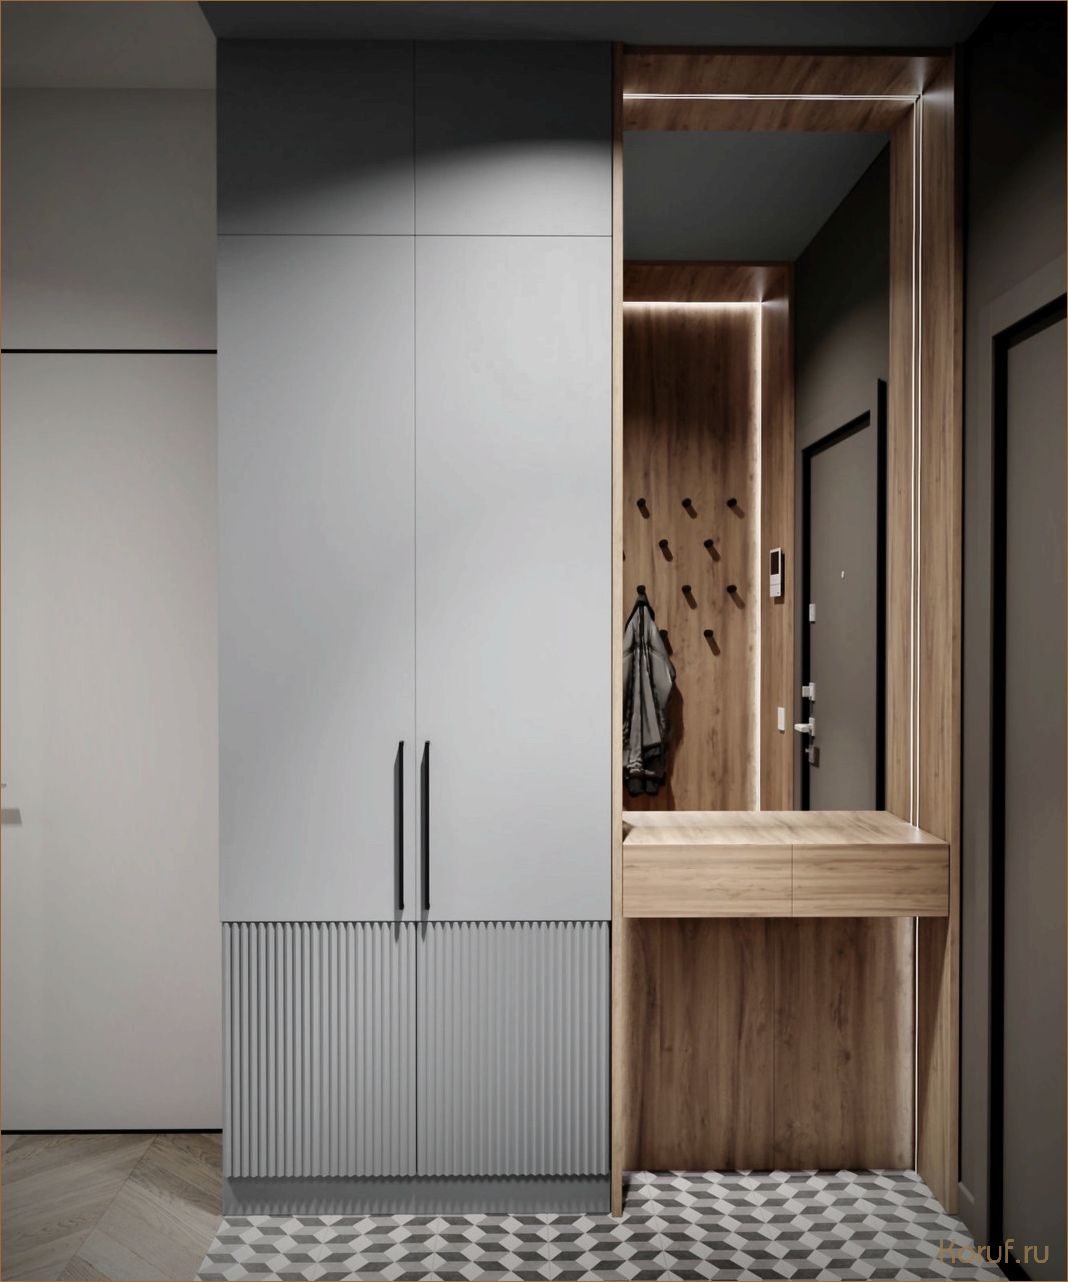 Как создать идеальный гардеробный шкаф для прихожей: советы по дизайну и организации пространства